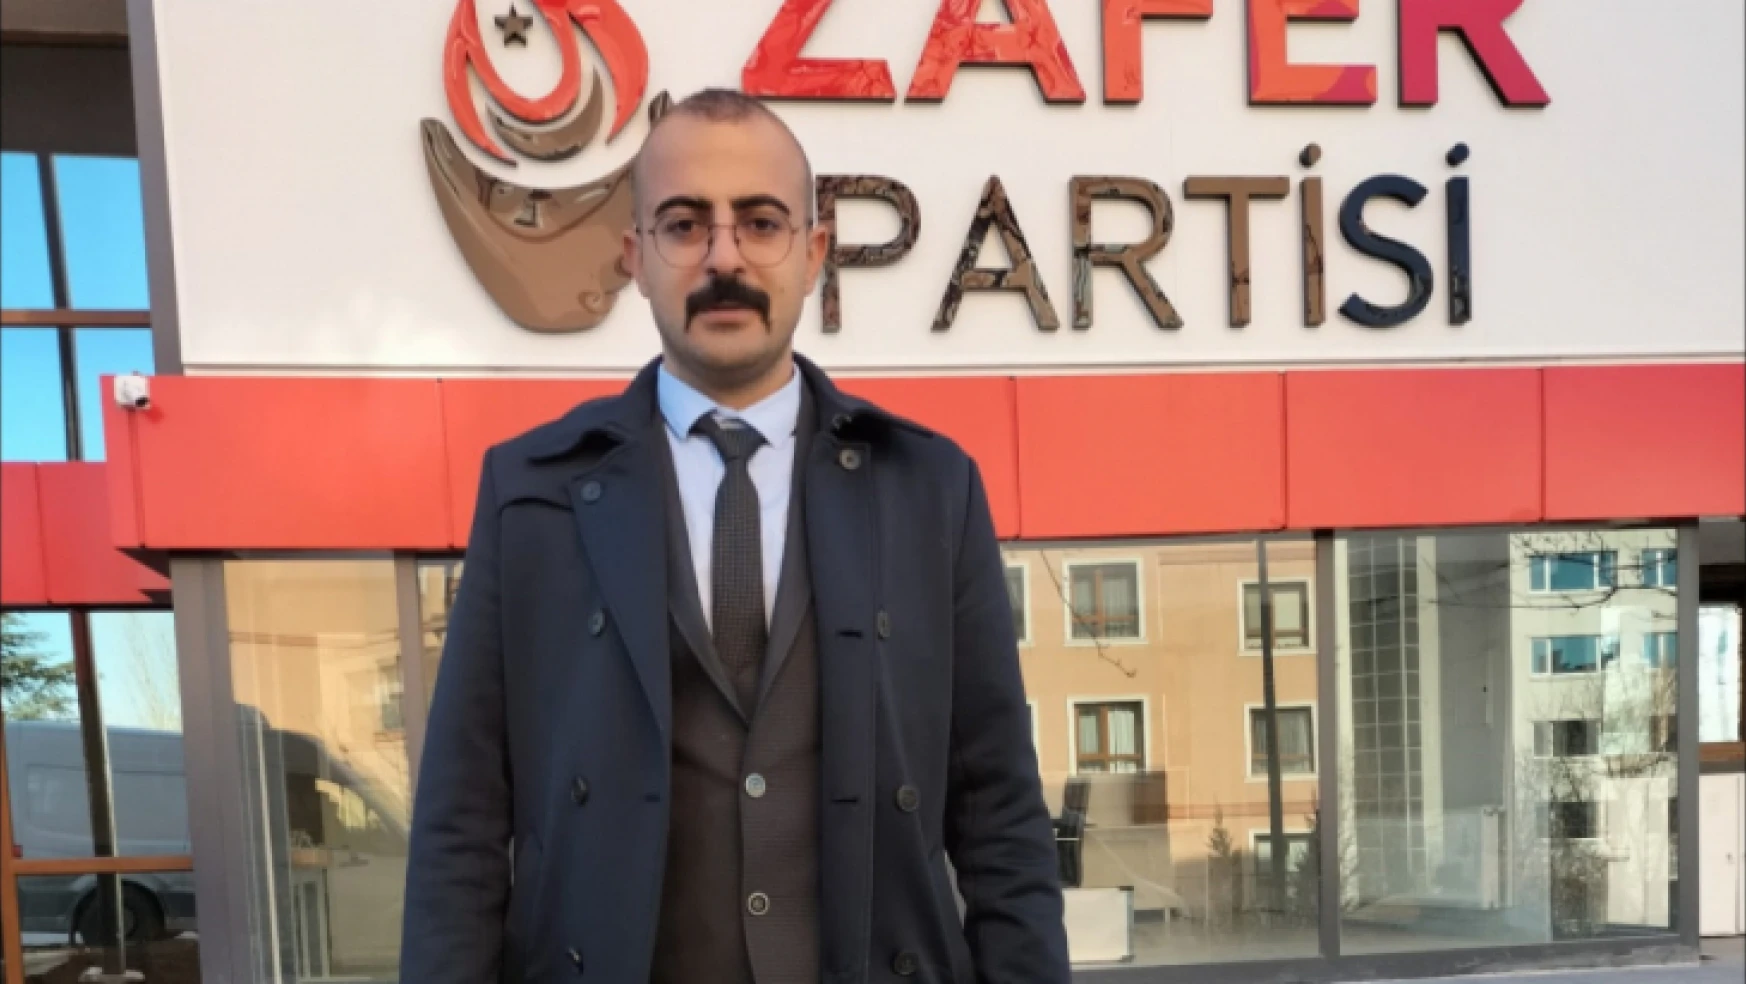 Akparti Yazıhan İlçe Başkanının Kardeşi Ve Kuzenin Insan Kaçakçılığından Suç Üstü.